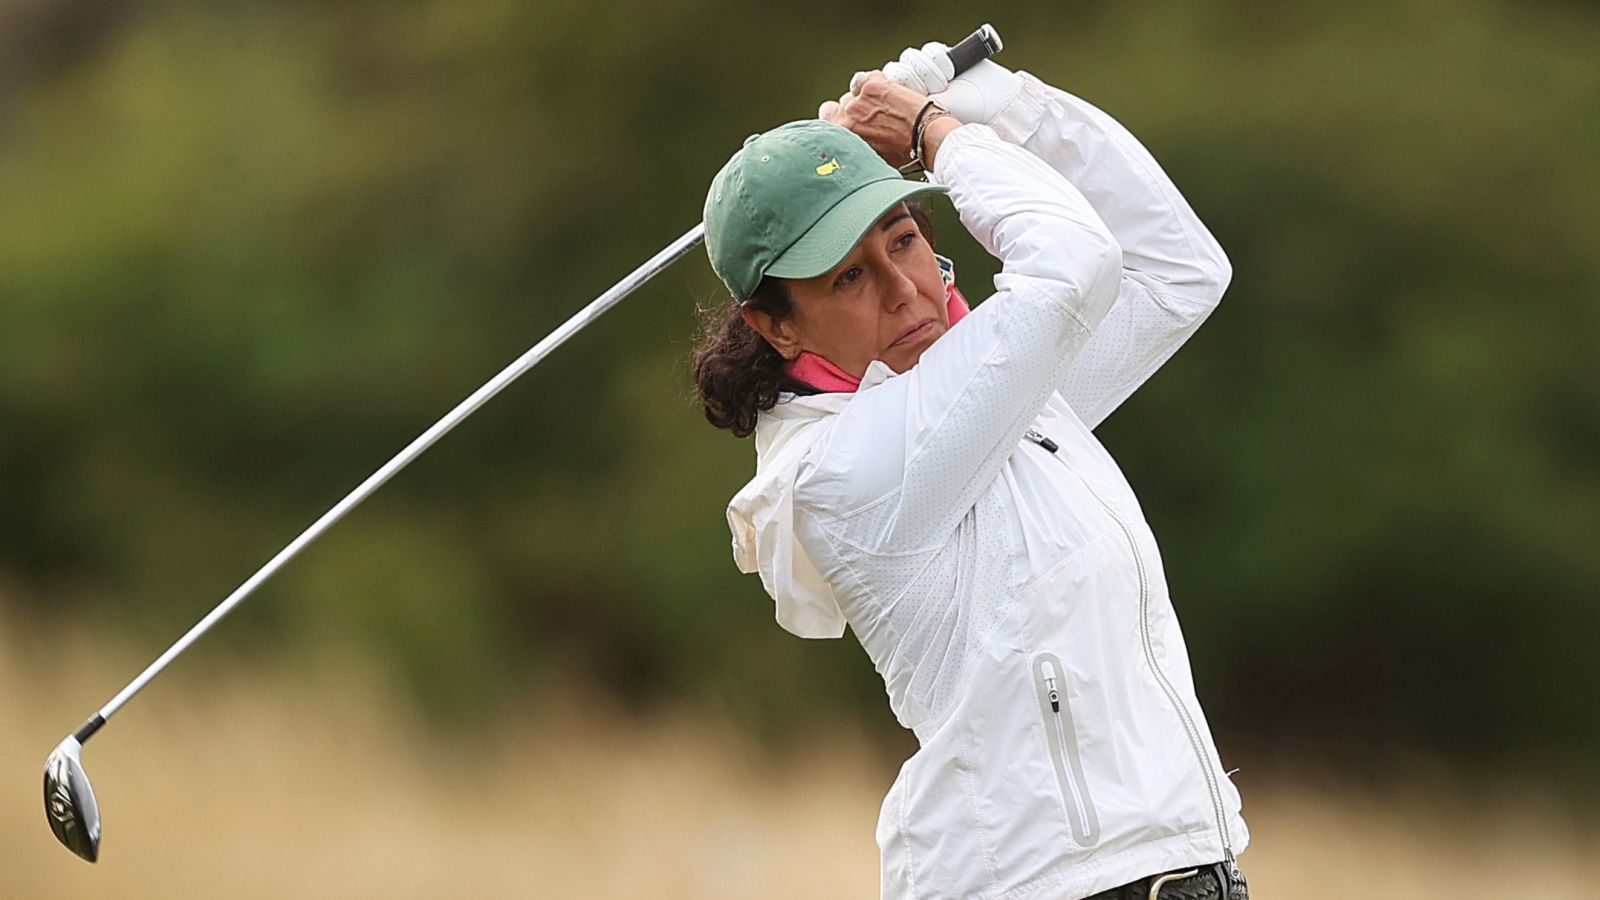 Ana Patricia Botín ist die fünfte Frau und die erste Spanierin, die dem Augusta National Golf Club beitreten durfte. © Oisin Keniry/Getty Images